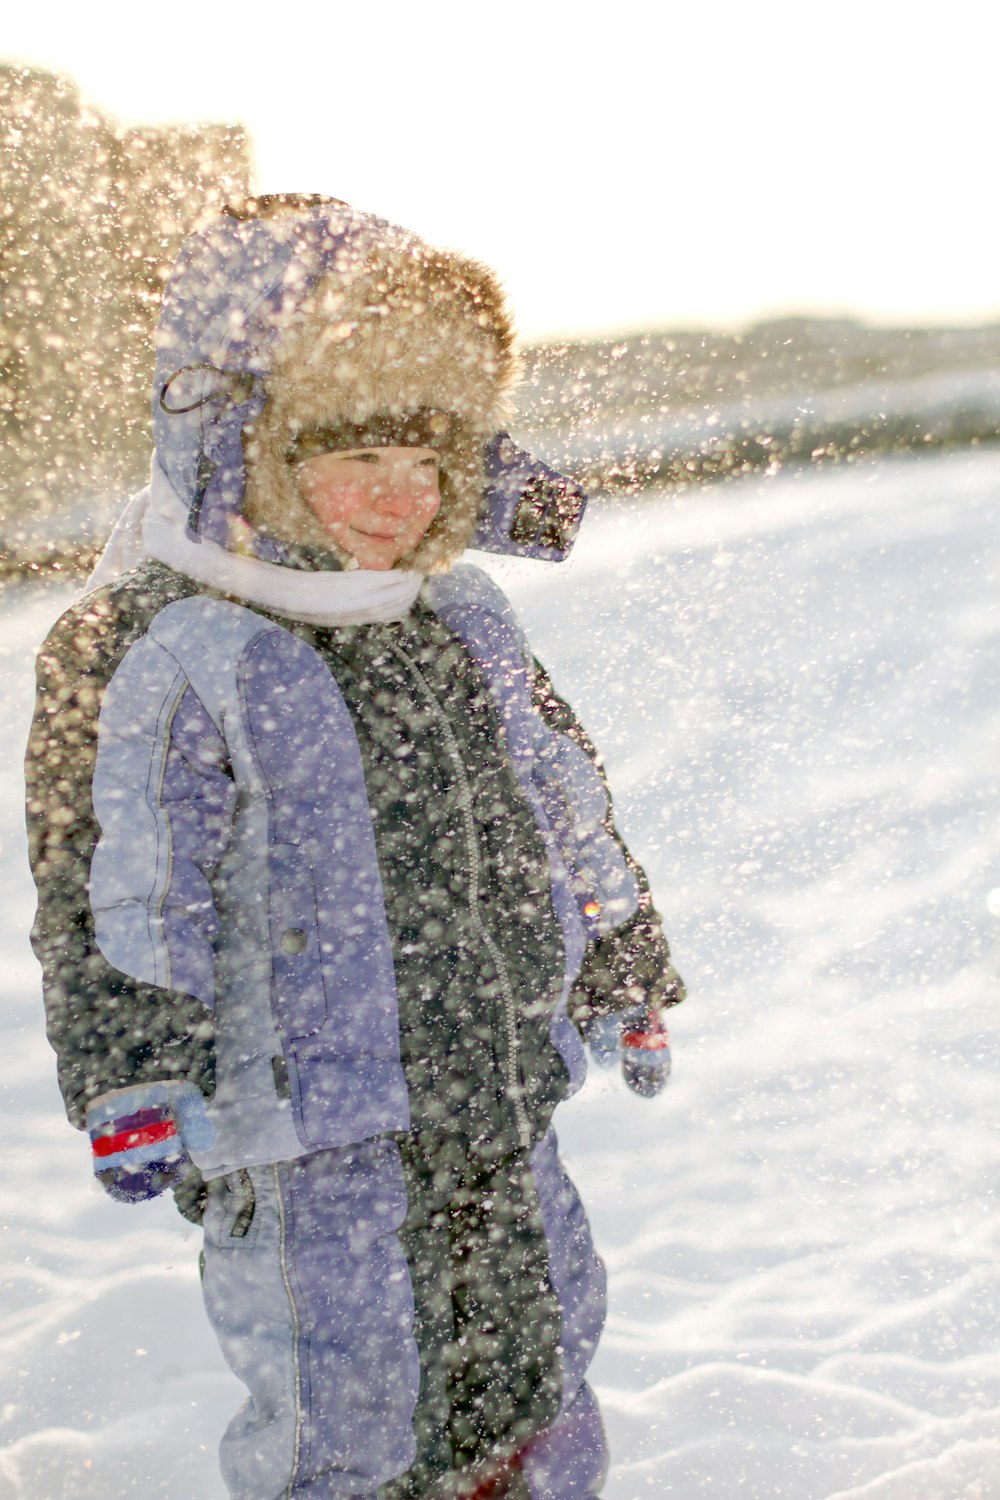 Ein kleiner Junge, der mit einem Snowboard im Schnee steht